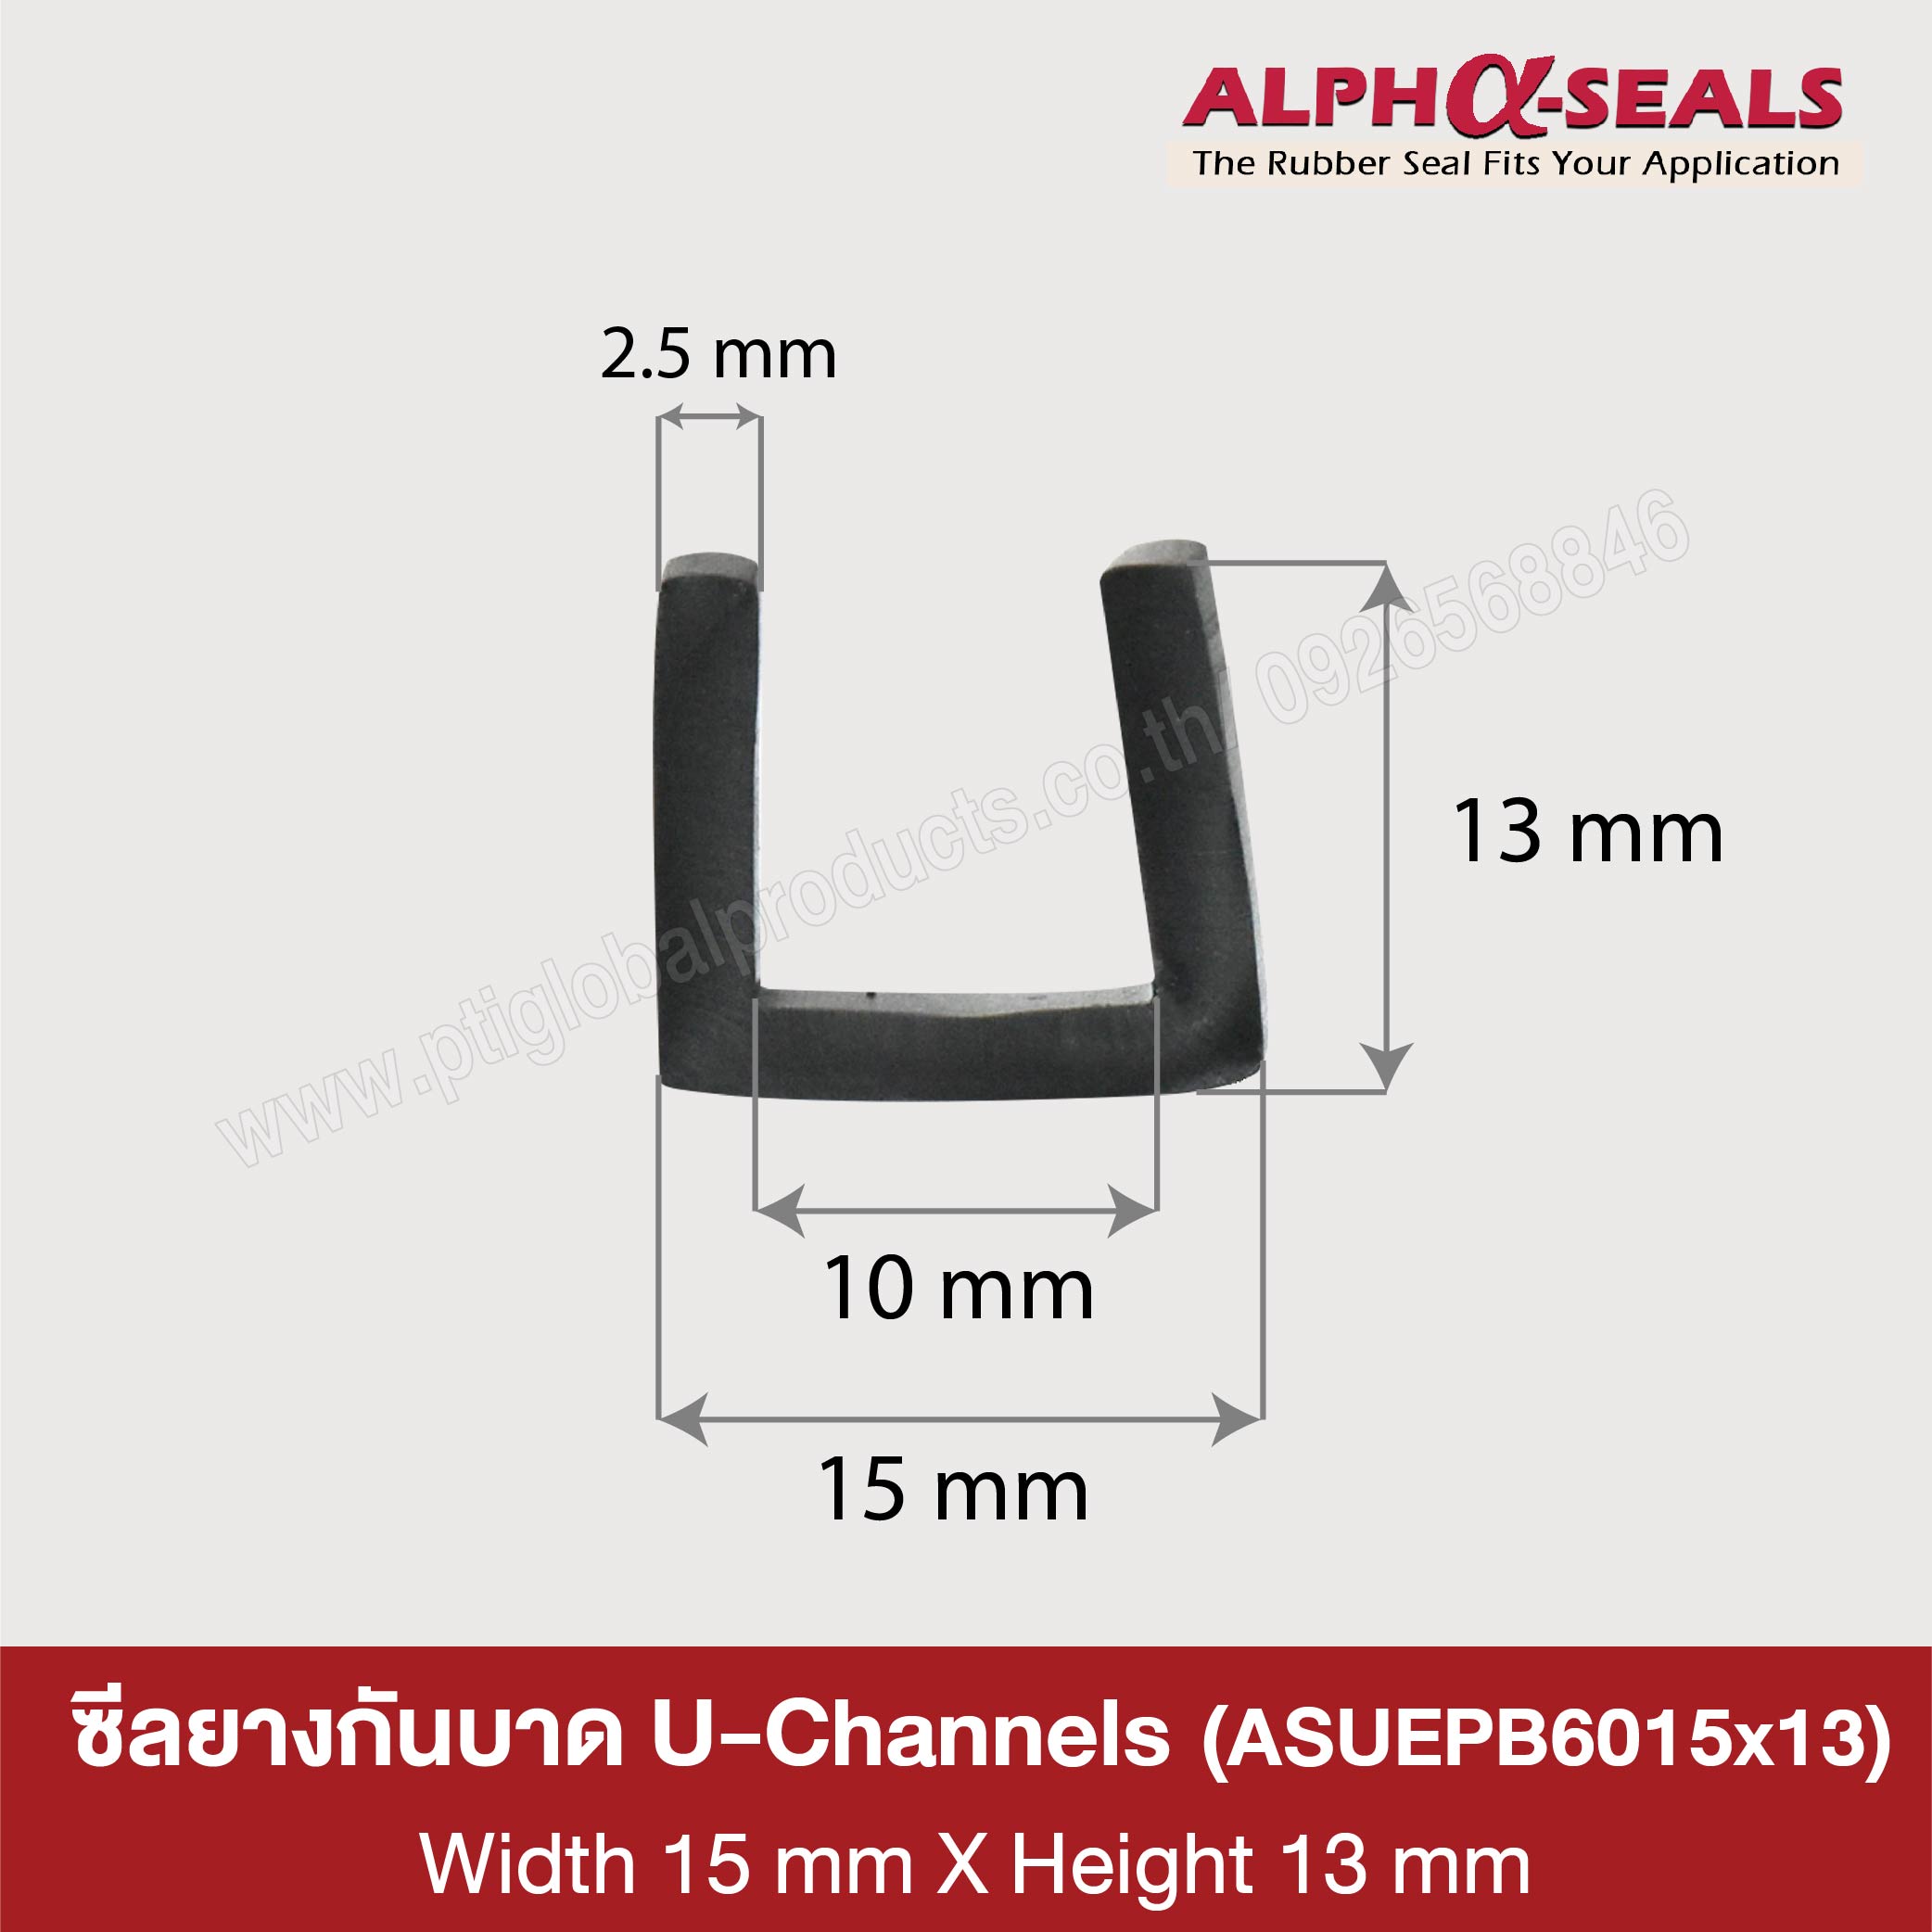 U-Channels rubber seal 15x13 mm.